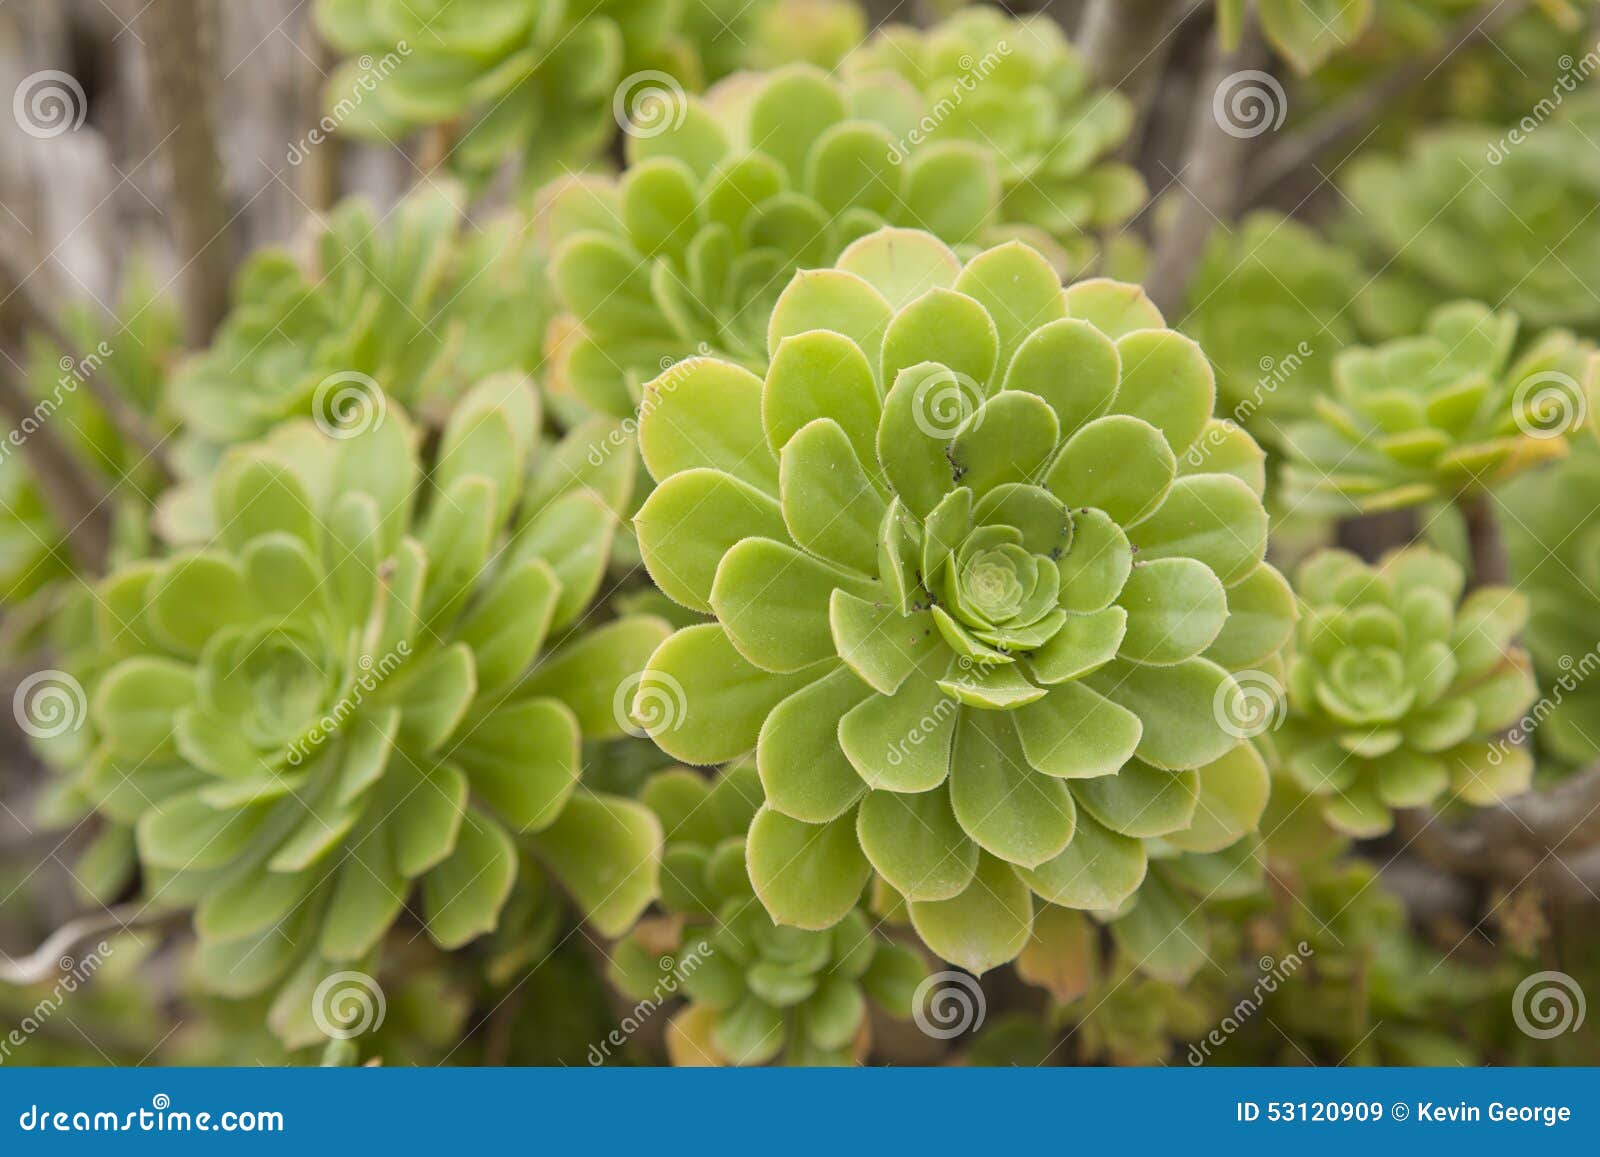 Details 100 picture flor verde cactus